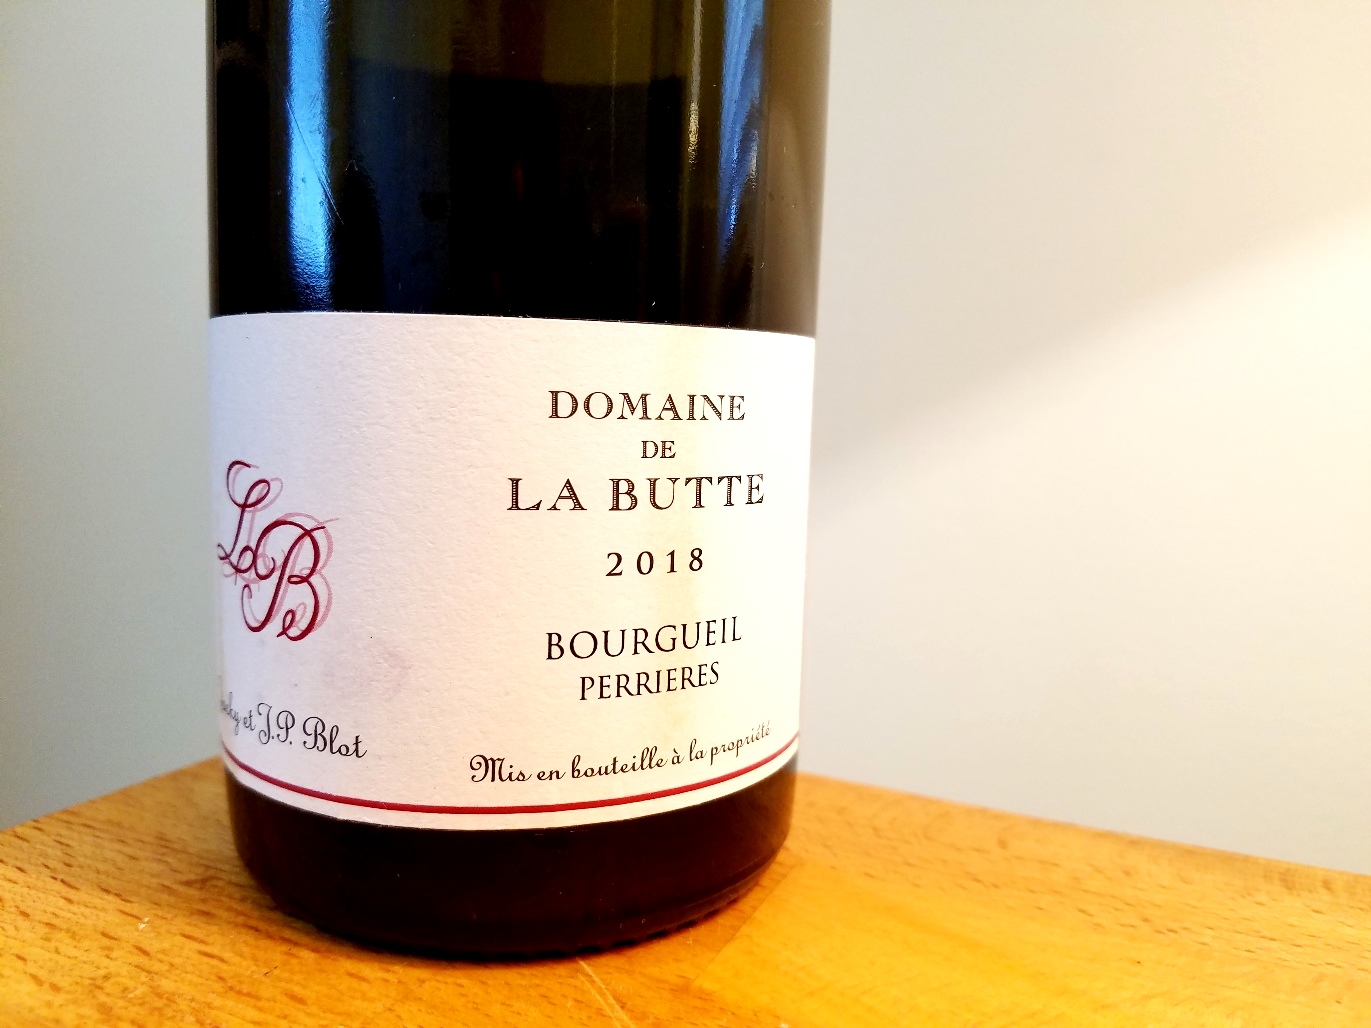 Jacky et Jean-Philippe Blot, Domaine de La Butte Bourgueil 2018, Loire, France, Wine Casual